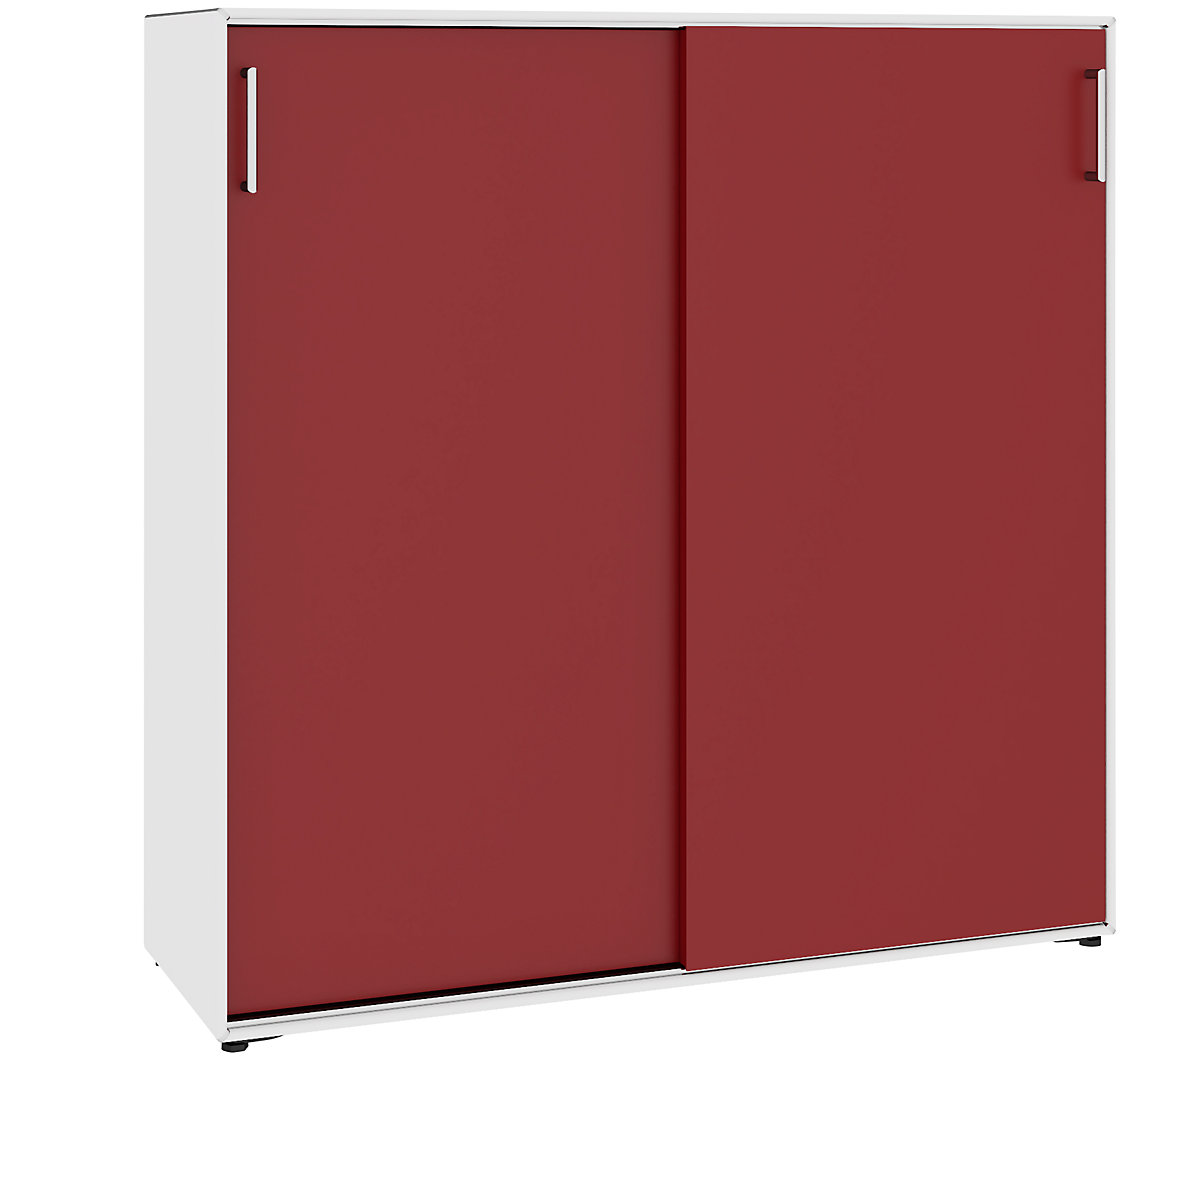 Omara z drsnimi vrati – mauser, 6 predelkov, širina 1155 mm, čisto bele / rubinasto rdeče barve-2